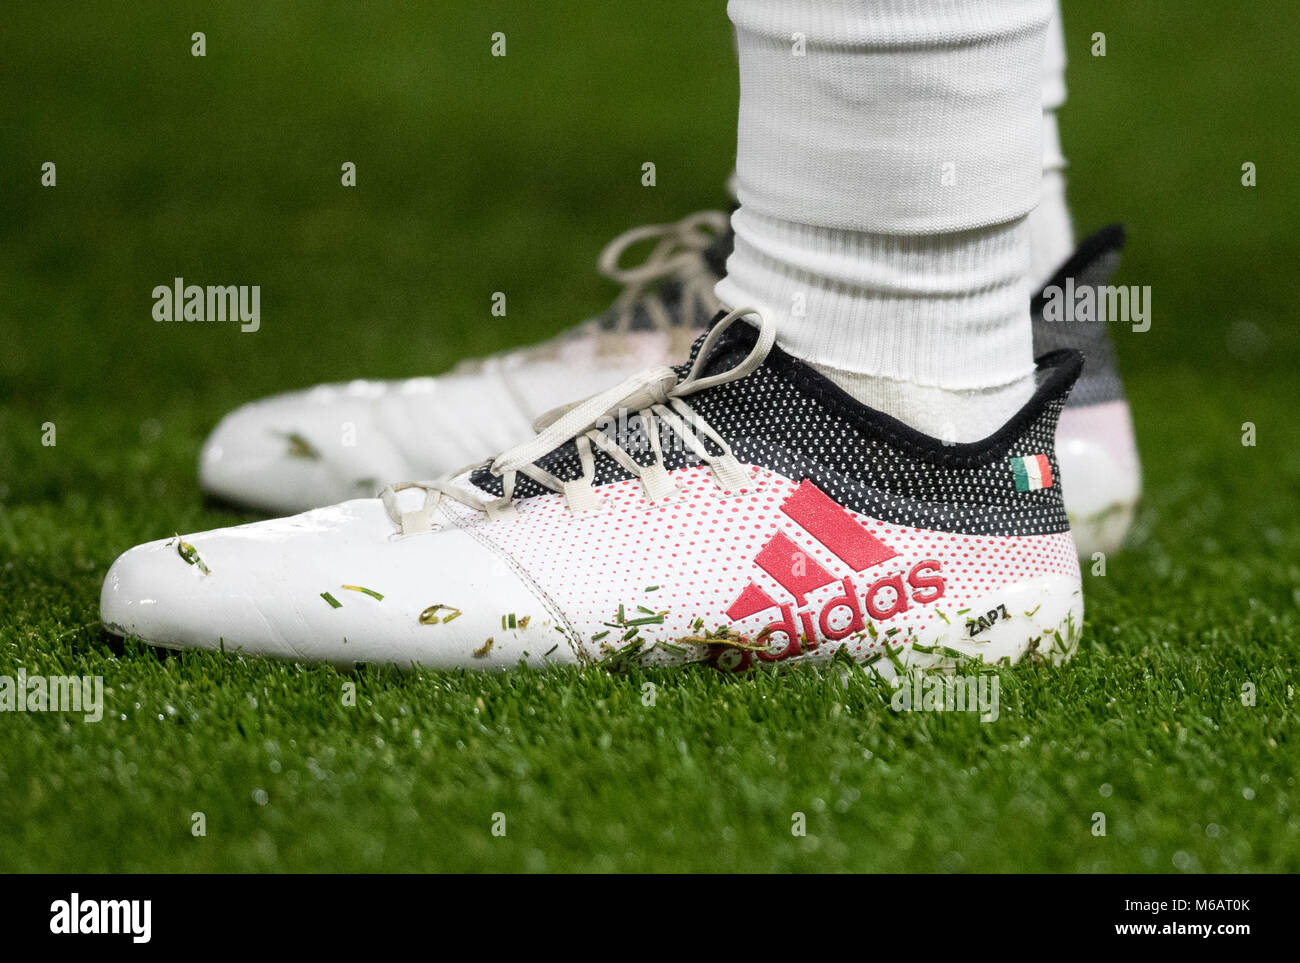 Les chaussures de football Adidas de David Zappacosta de Chelsea afficher ZAP7 et le drapeau de l'Italie devant la Premier League match entre Watford et Chels Banque D'Images